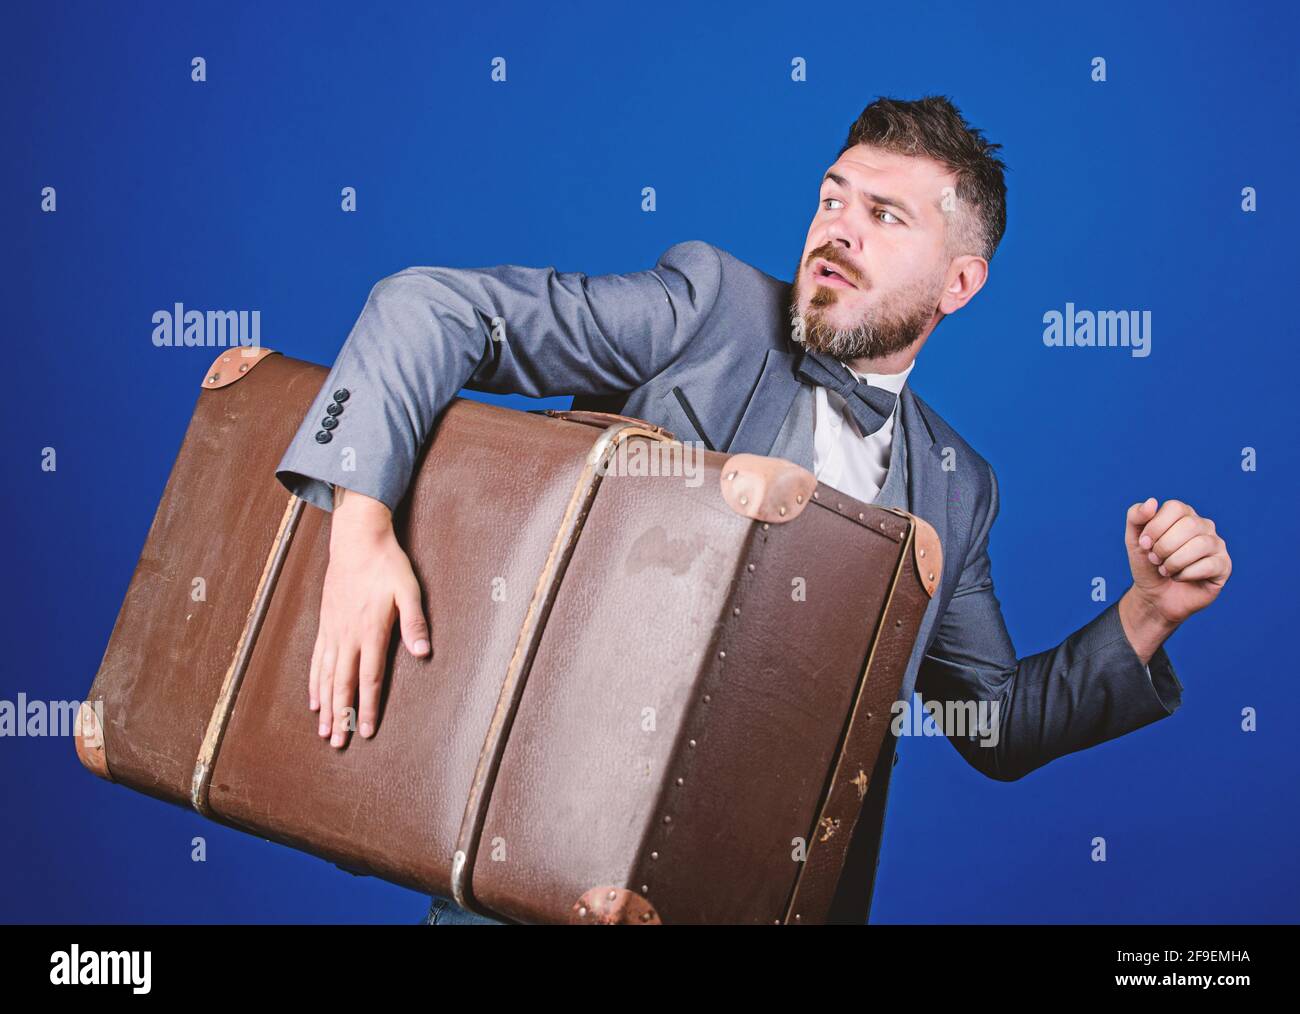 Dieb rauf mit schwerem Koffer. Jahrhundertdiebstahl. Lieferservice. Reise- und Gepäckkonzept. Hippster Reisender mit Gepäck. Gepäckversicherung Stockfoto